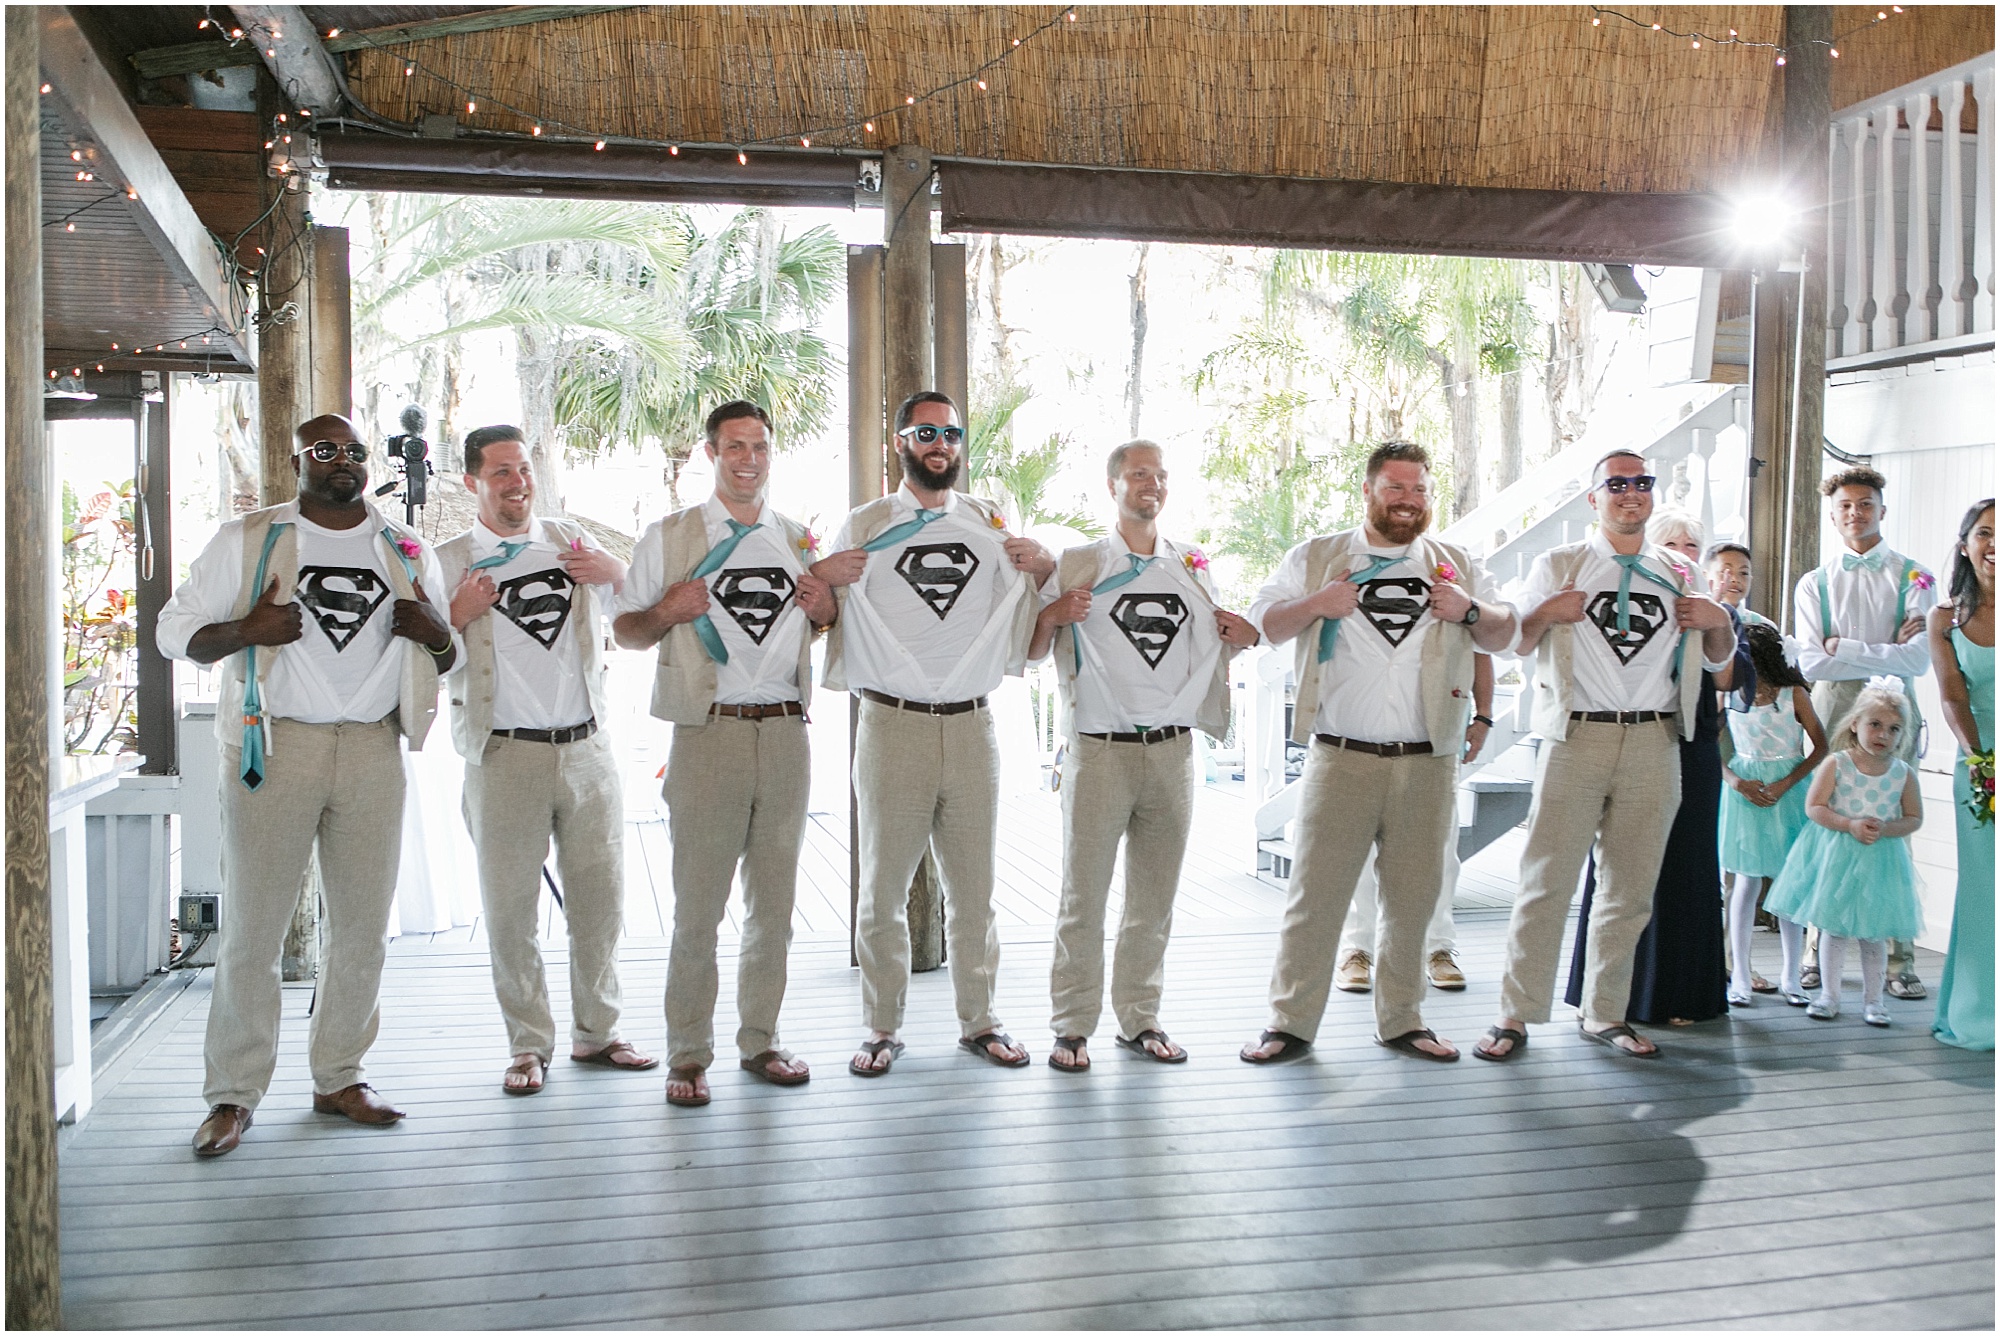 Groomsmen revealing Superman shirts under their wedding attire.